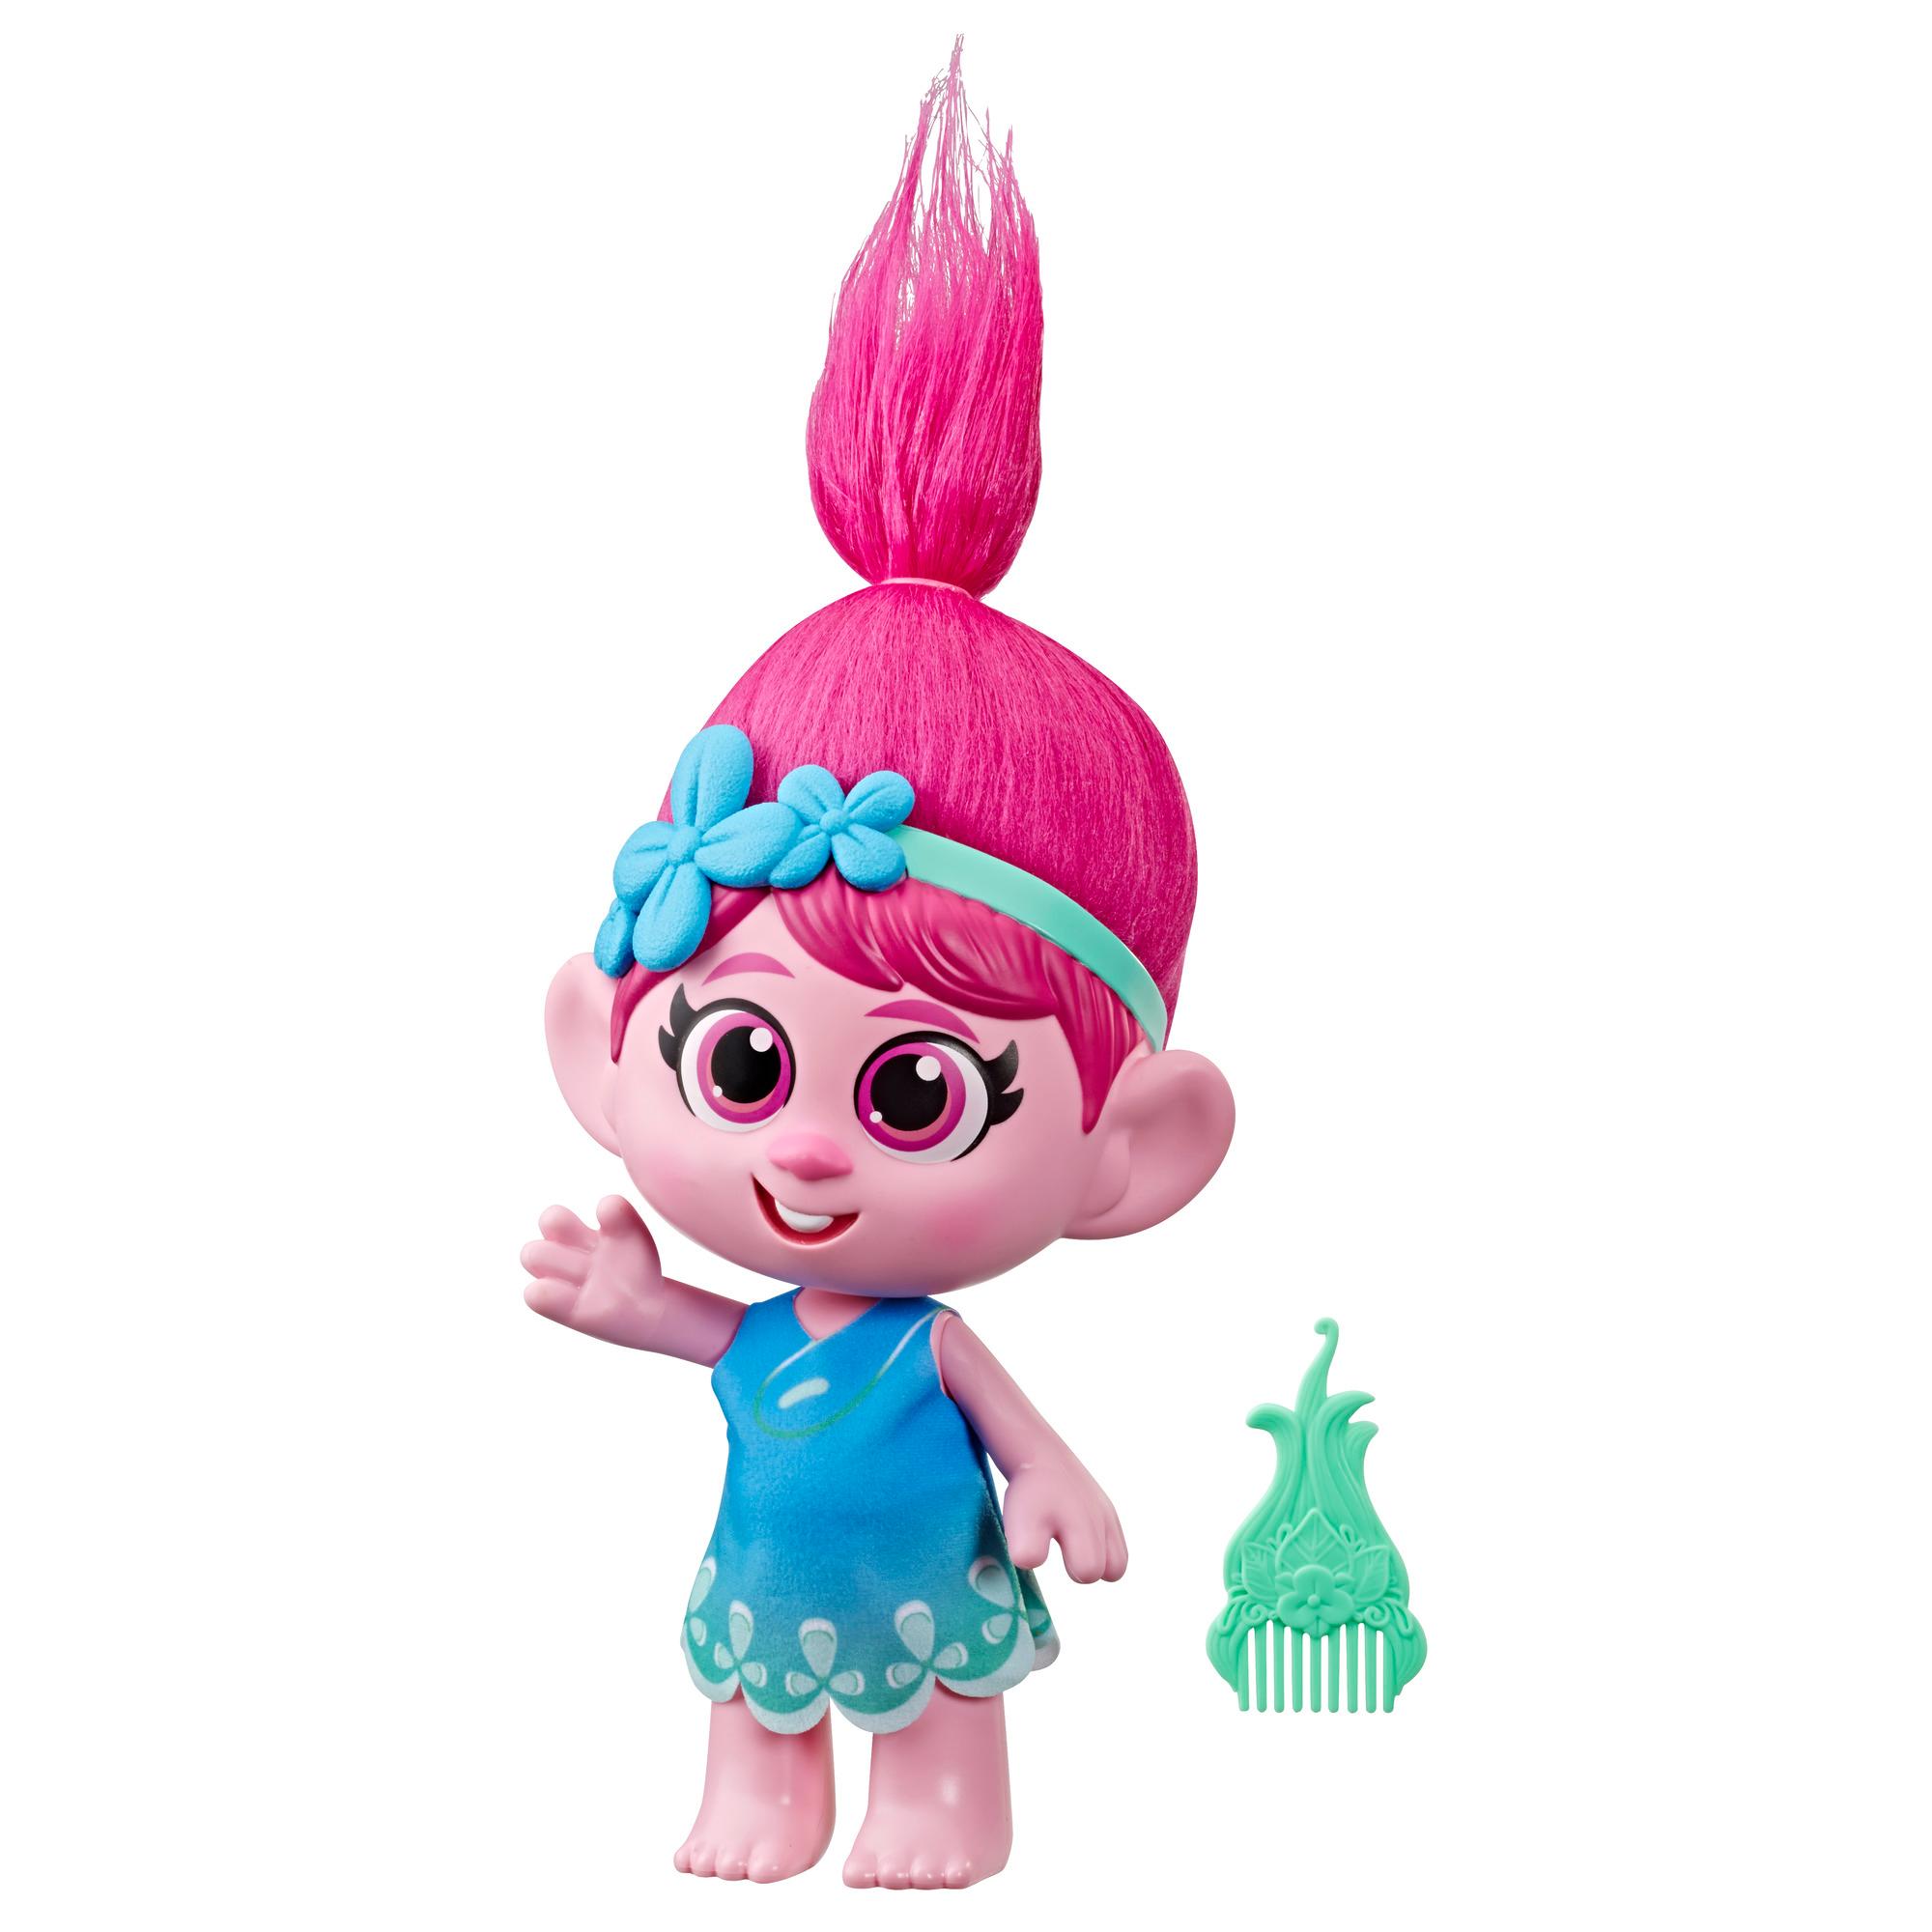 DreamWorks Trolls da DreamWorks - Poppy Criança com vestido removível e pente, com inspiração no filme Trolls World Tour